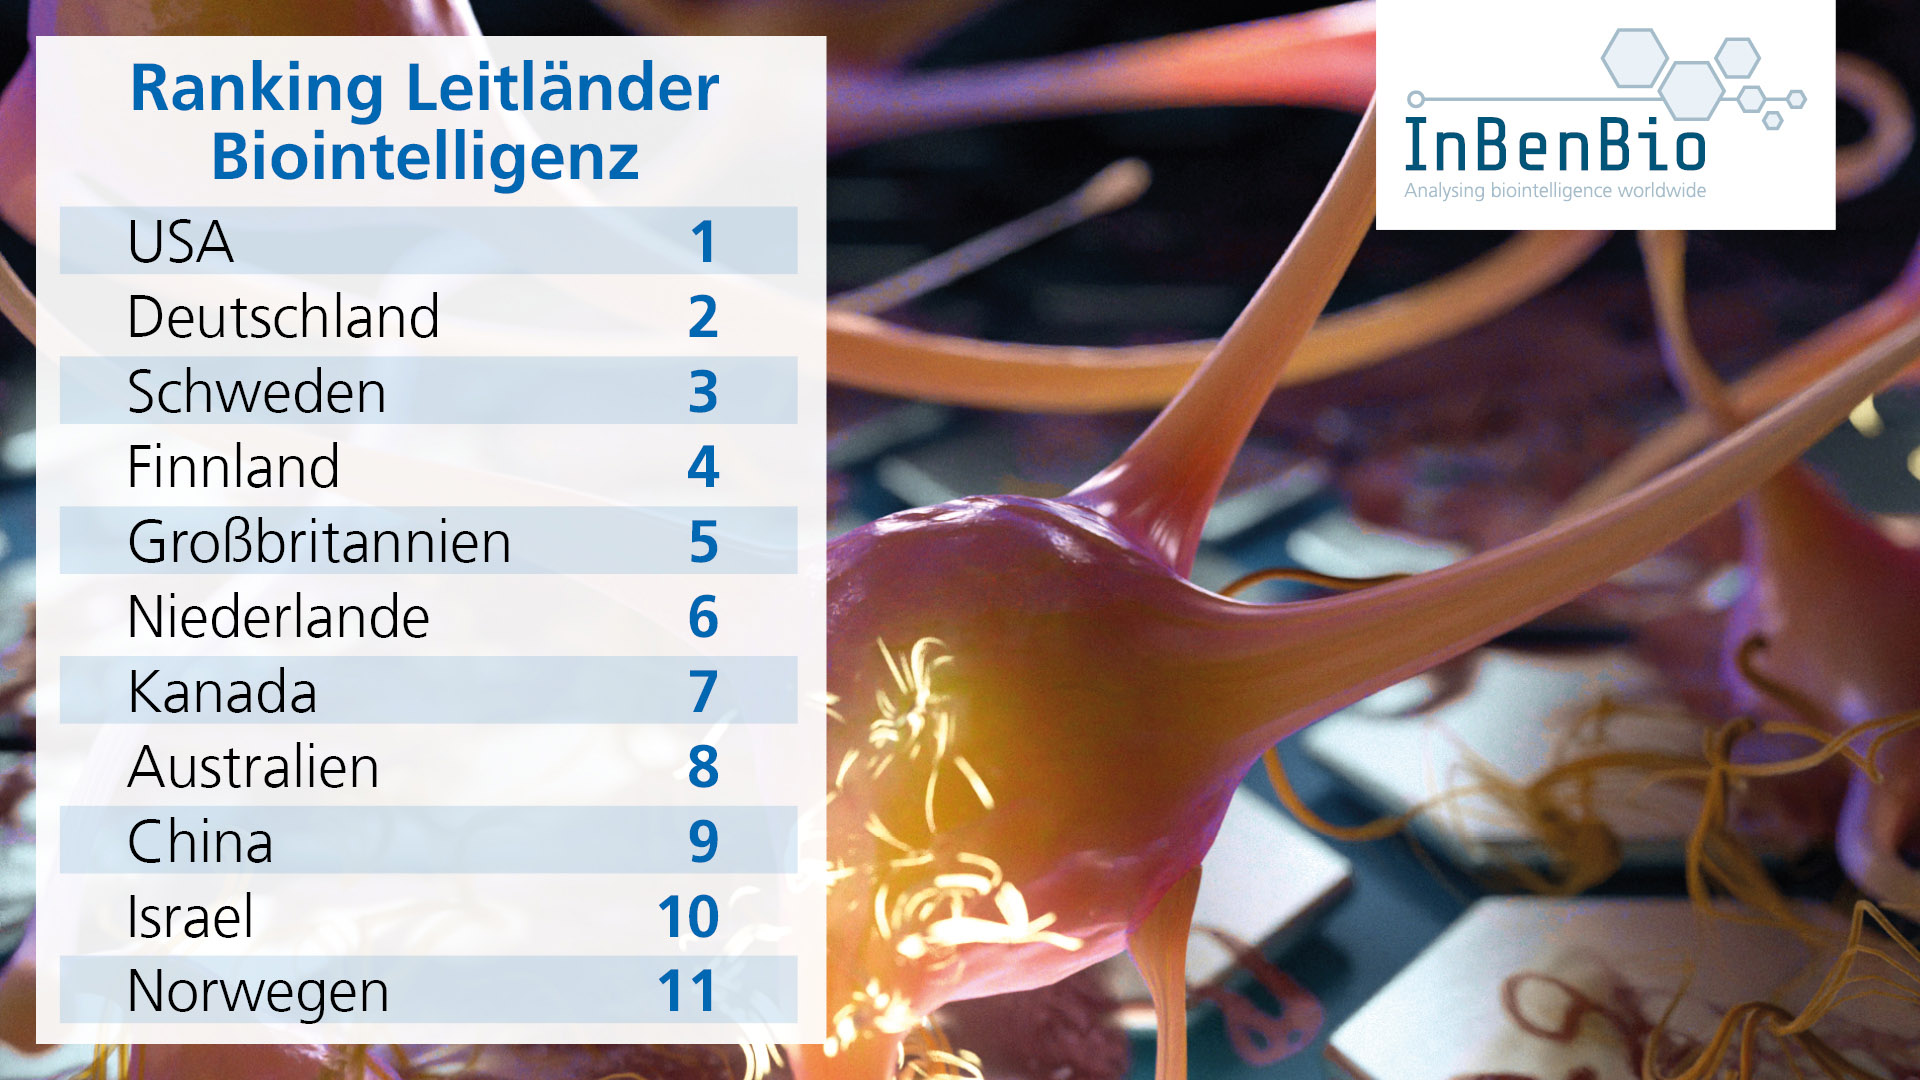 Ranking der Leitländer auf dem Gebiet der Biointelligenz: Deutschland liegt auf Platz 2, gleich hinter den USA